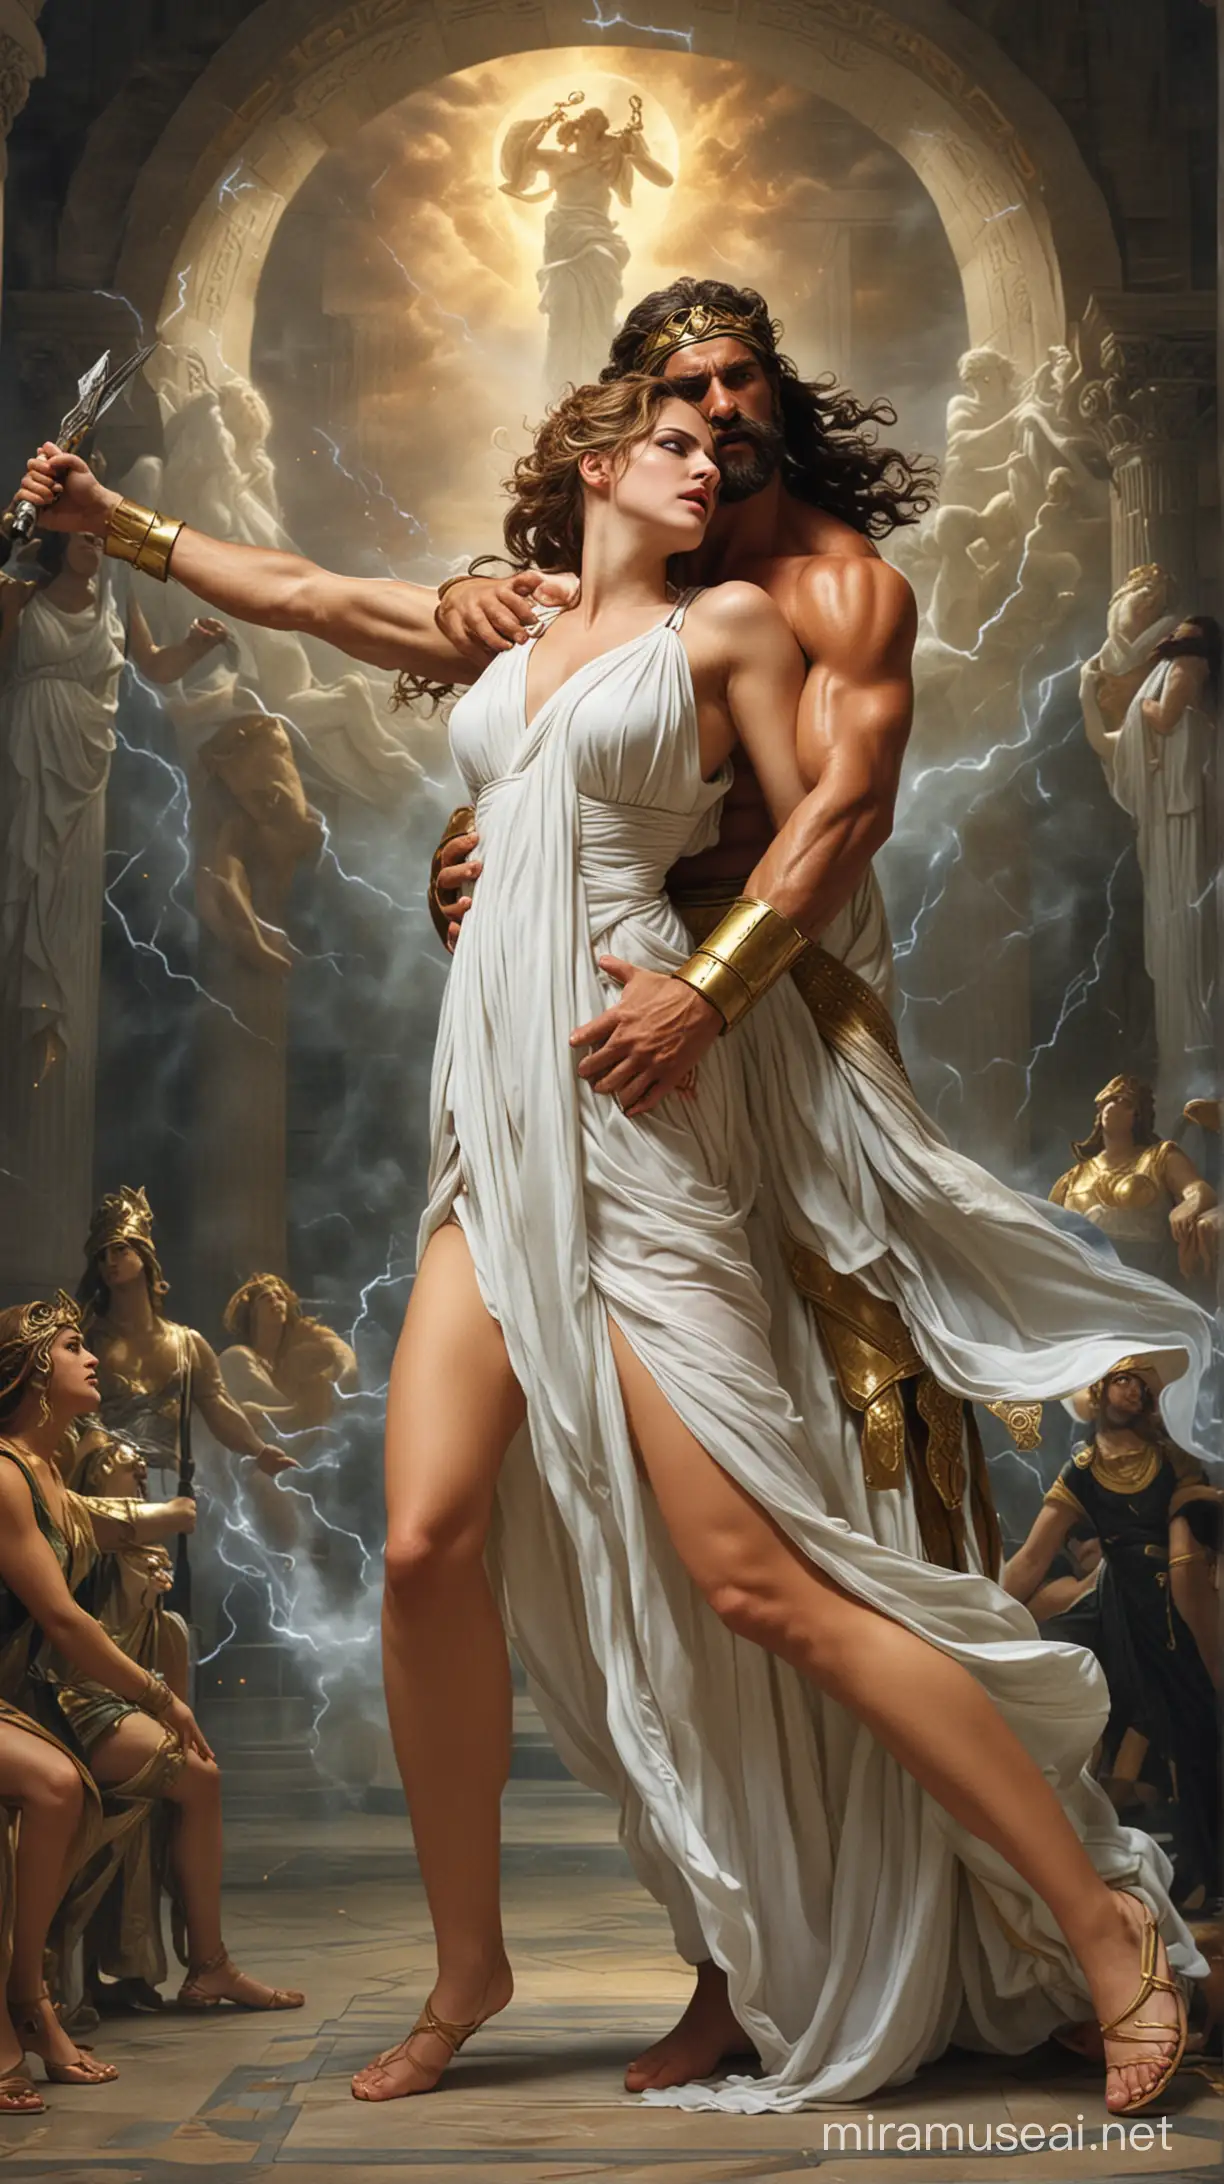 Zeus forcing Hera